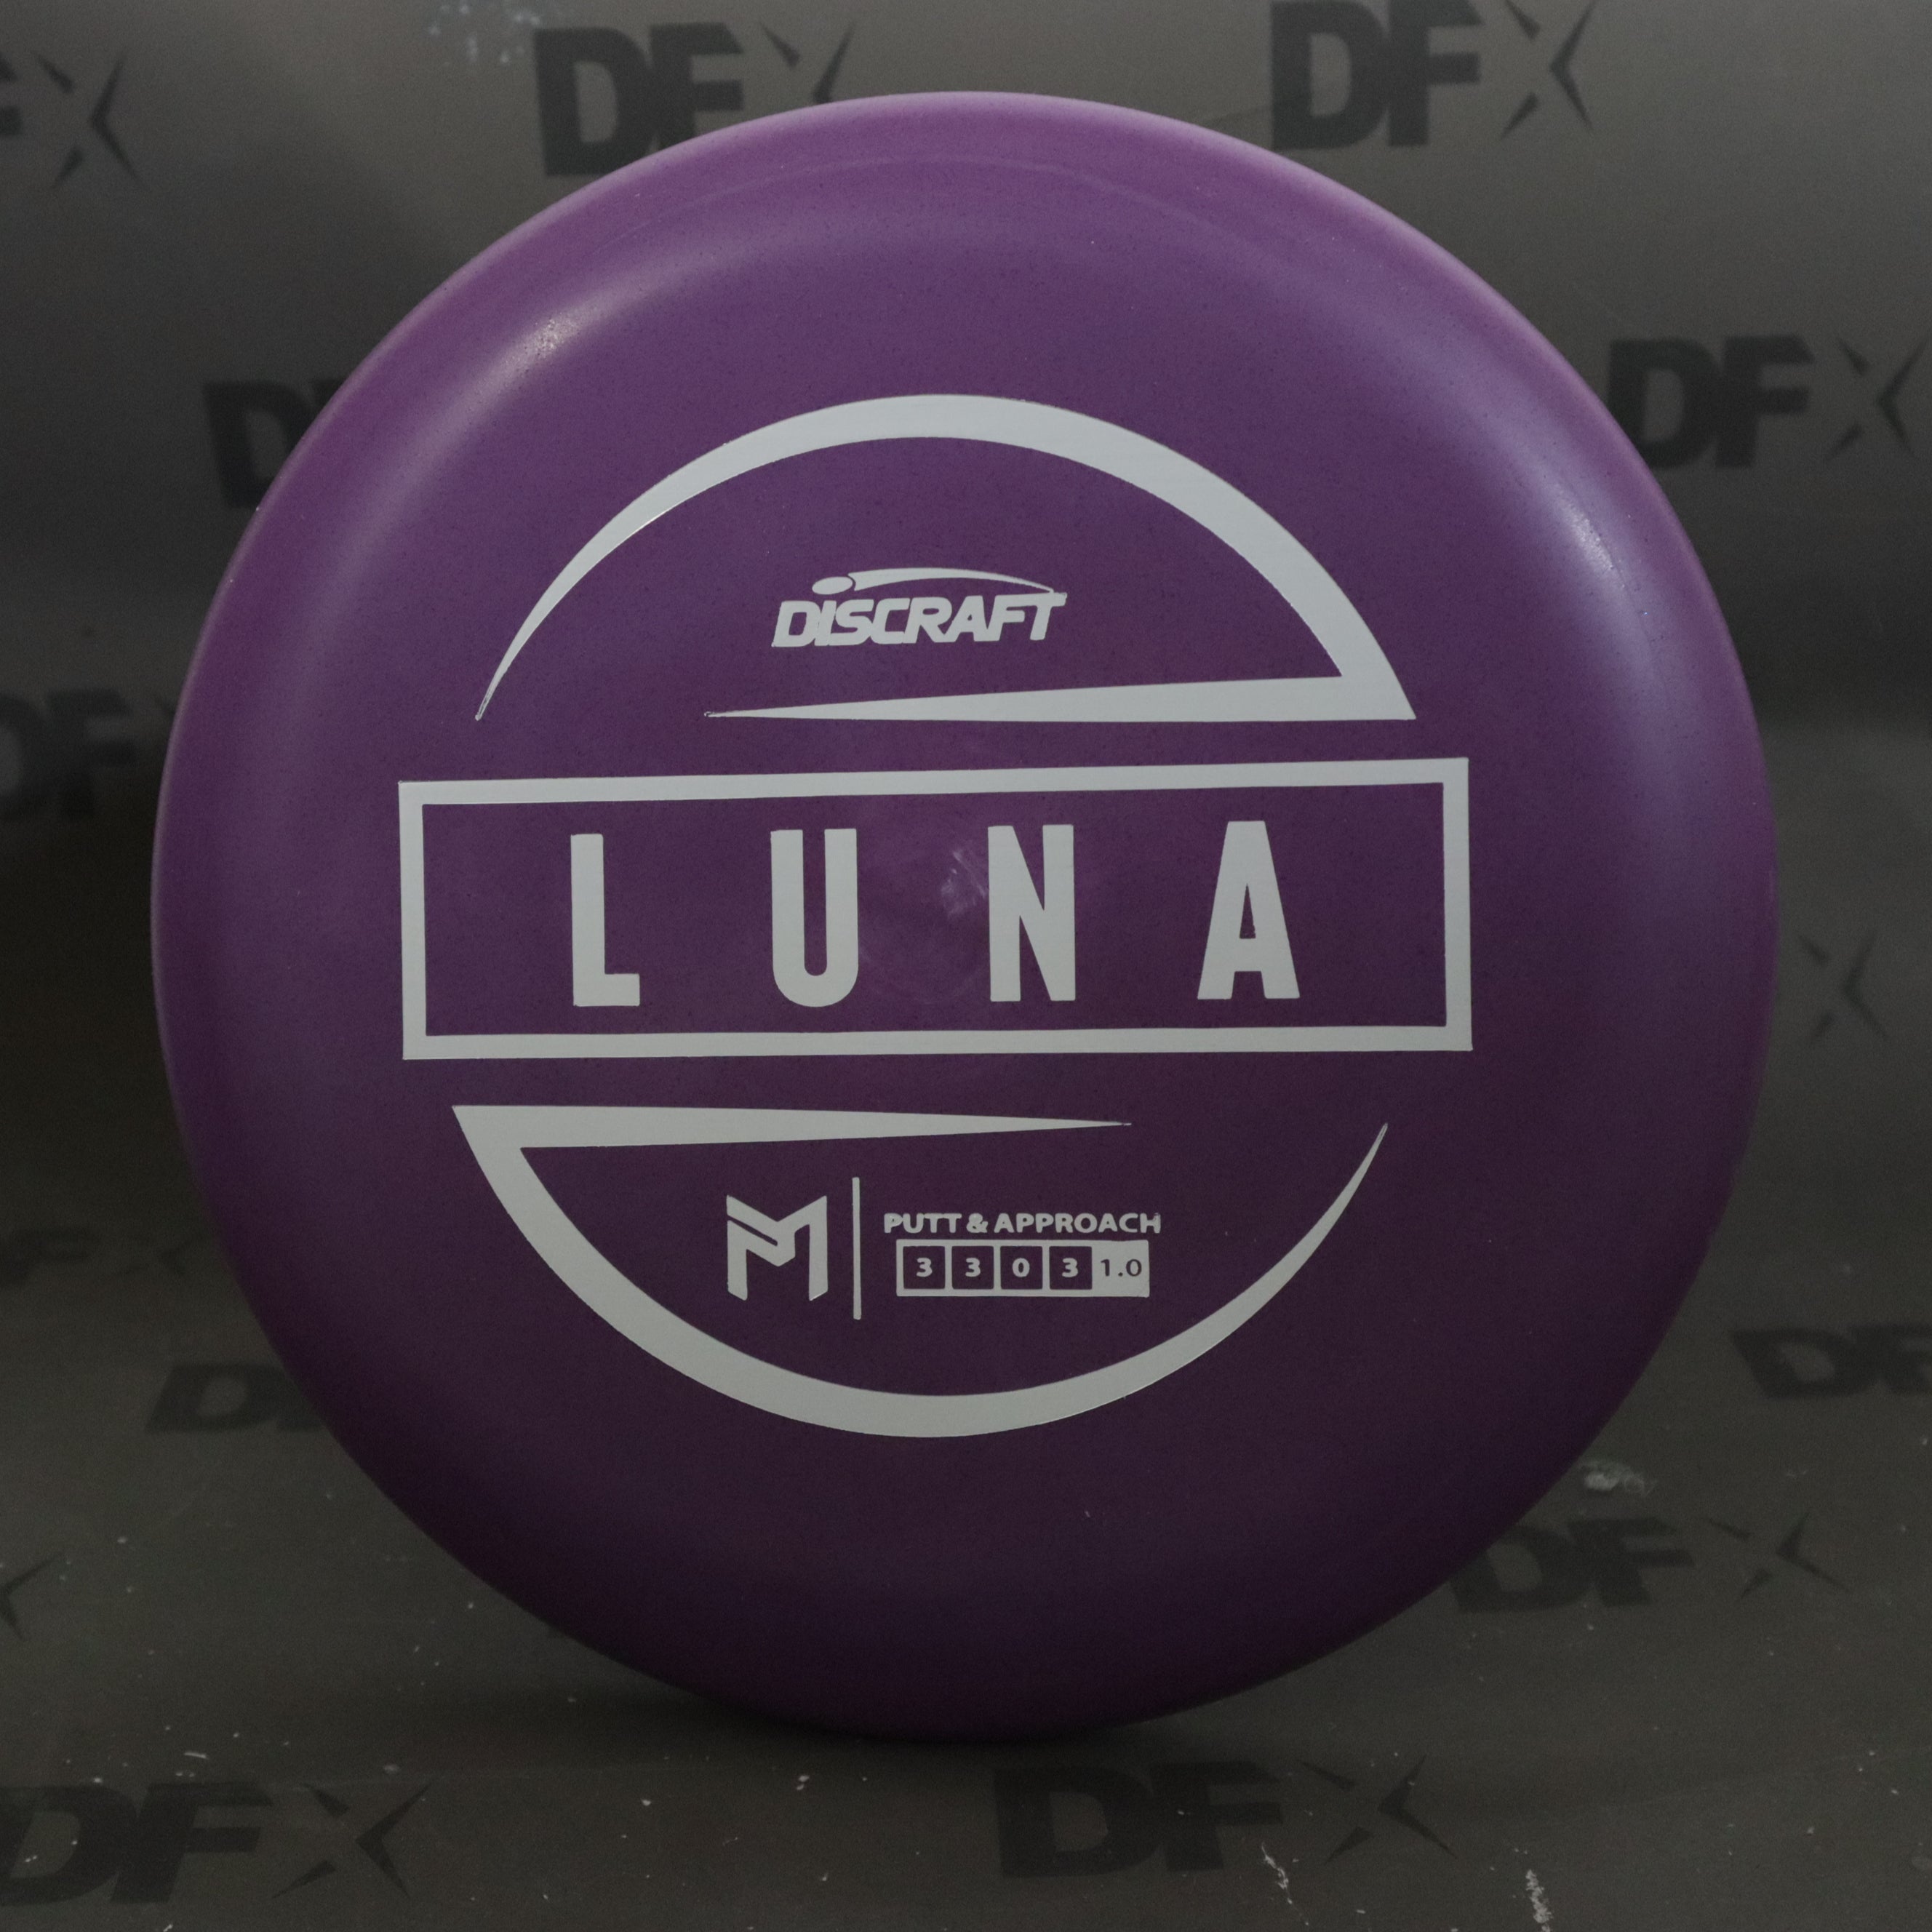 Discraft Luna - Rubber Blend